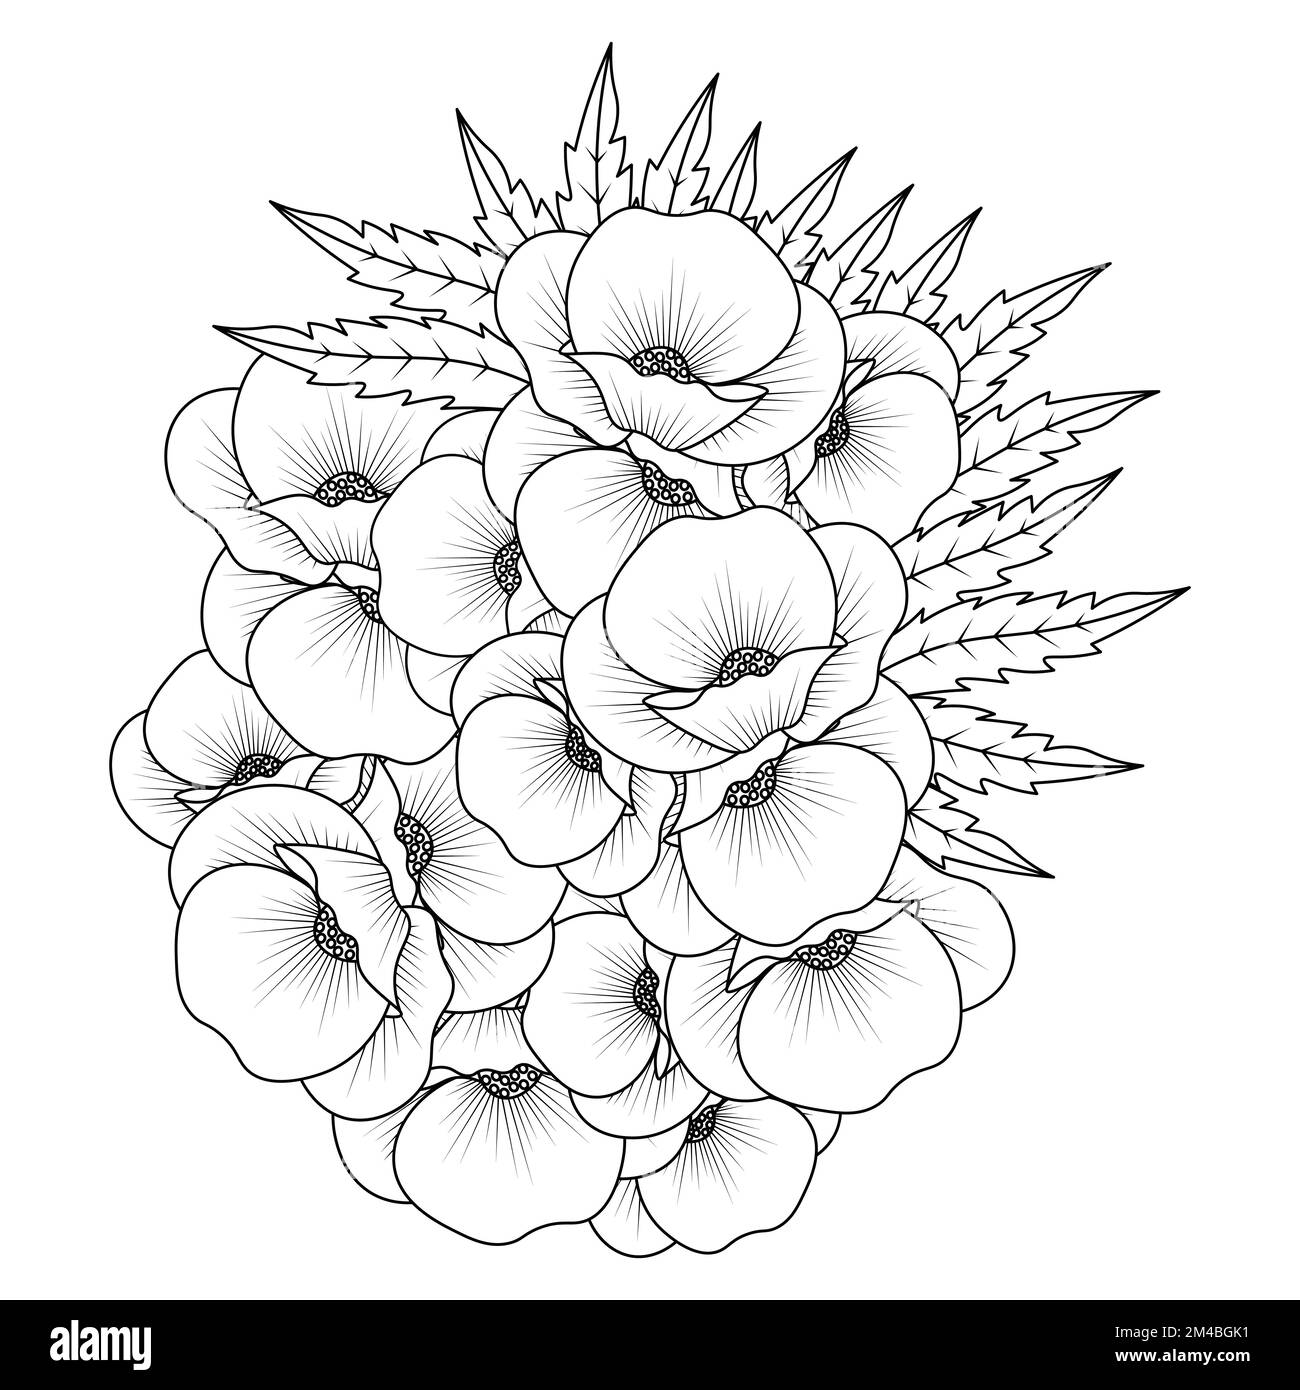 Mohnblumen Liniendesign der Farbseite Blume mit detaillierter Linienart-Vektorgrafik Stock Vektor